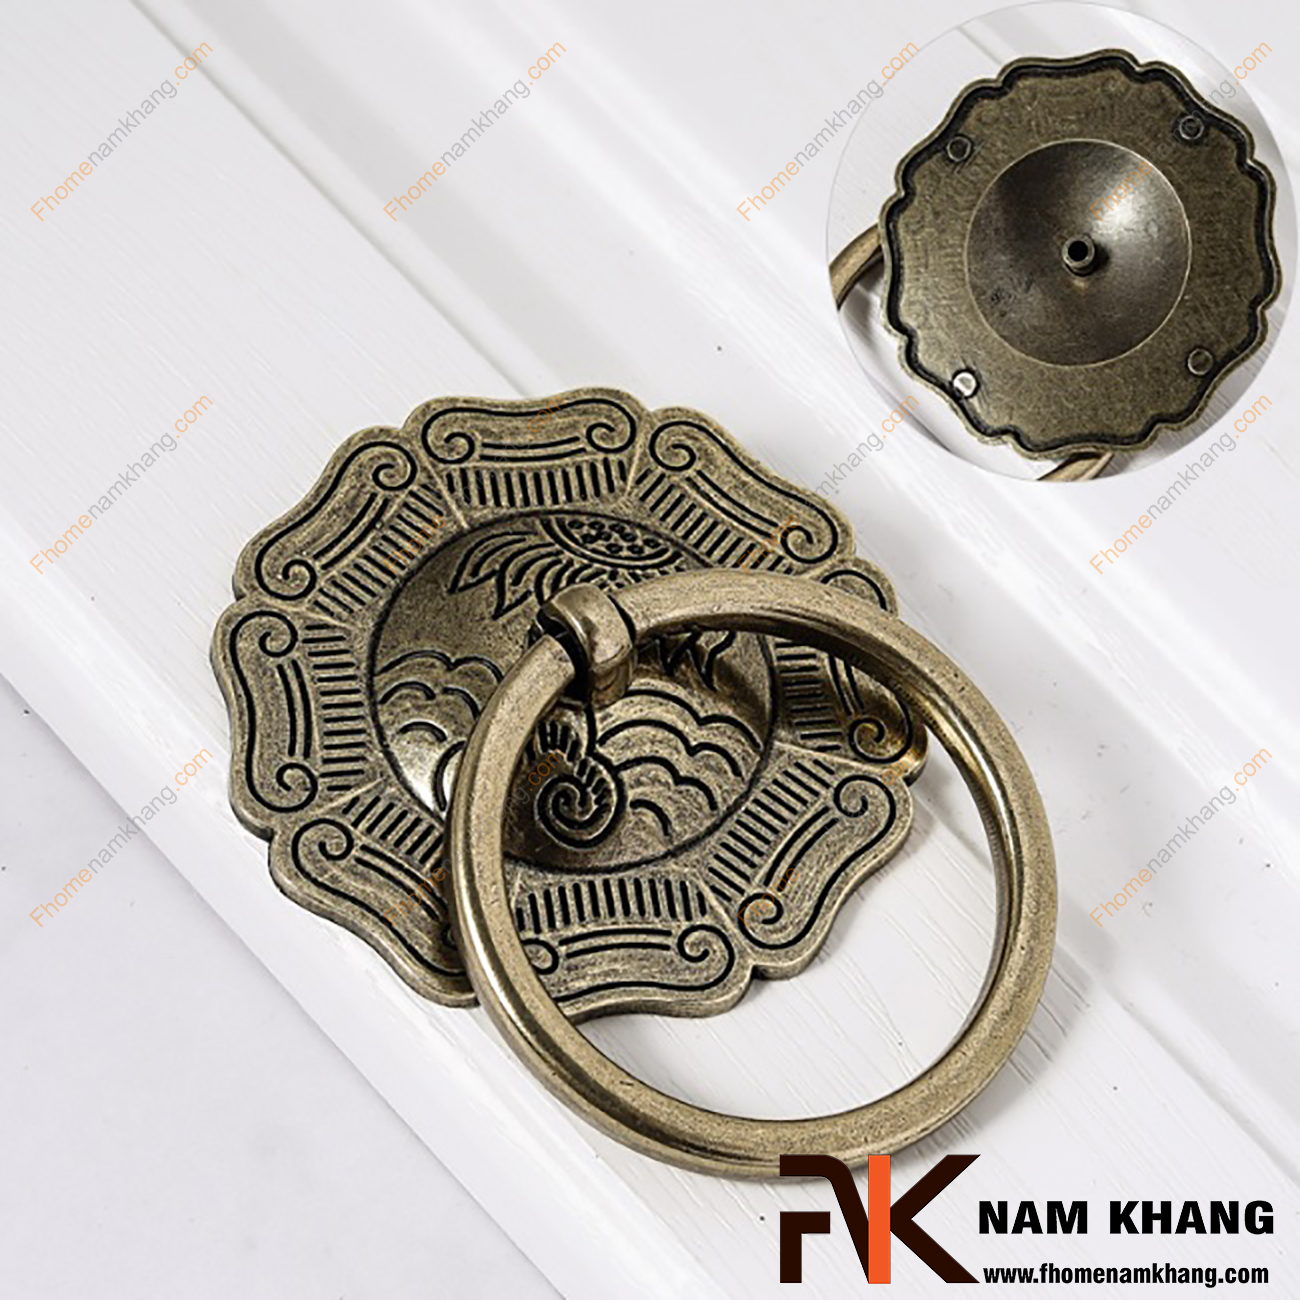 Núm tay nắm tủ dạng vòng đồng NK092-C được sử dụng nhiều trên các dạng tủ kệ nội thất phong thủy, đặc biệt là các dạng tủ thờ cổ.